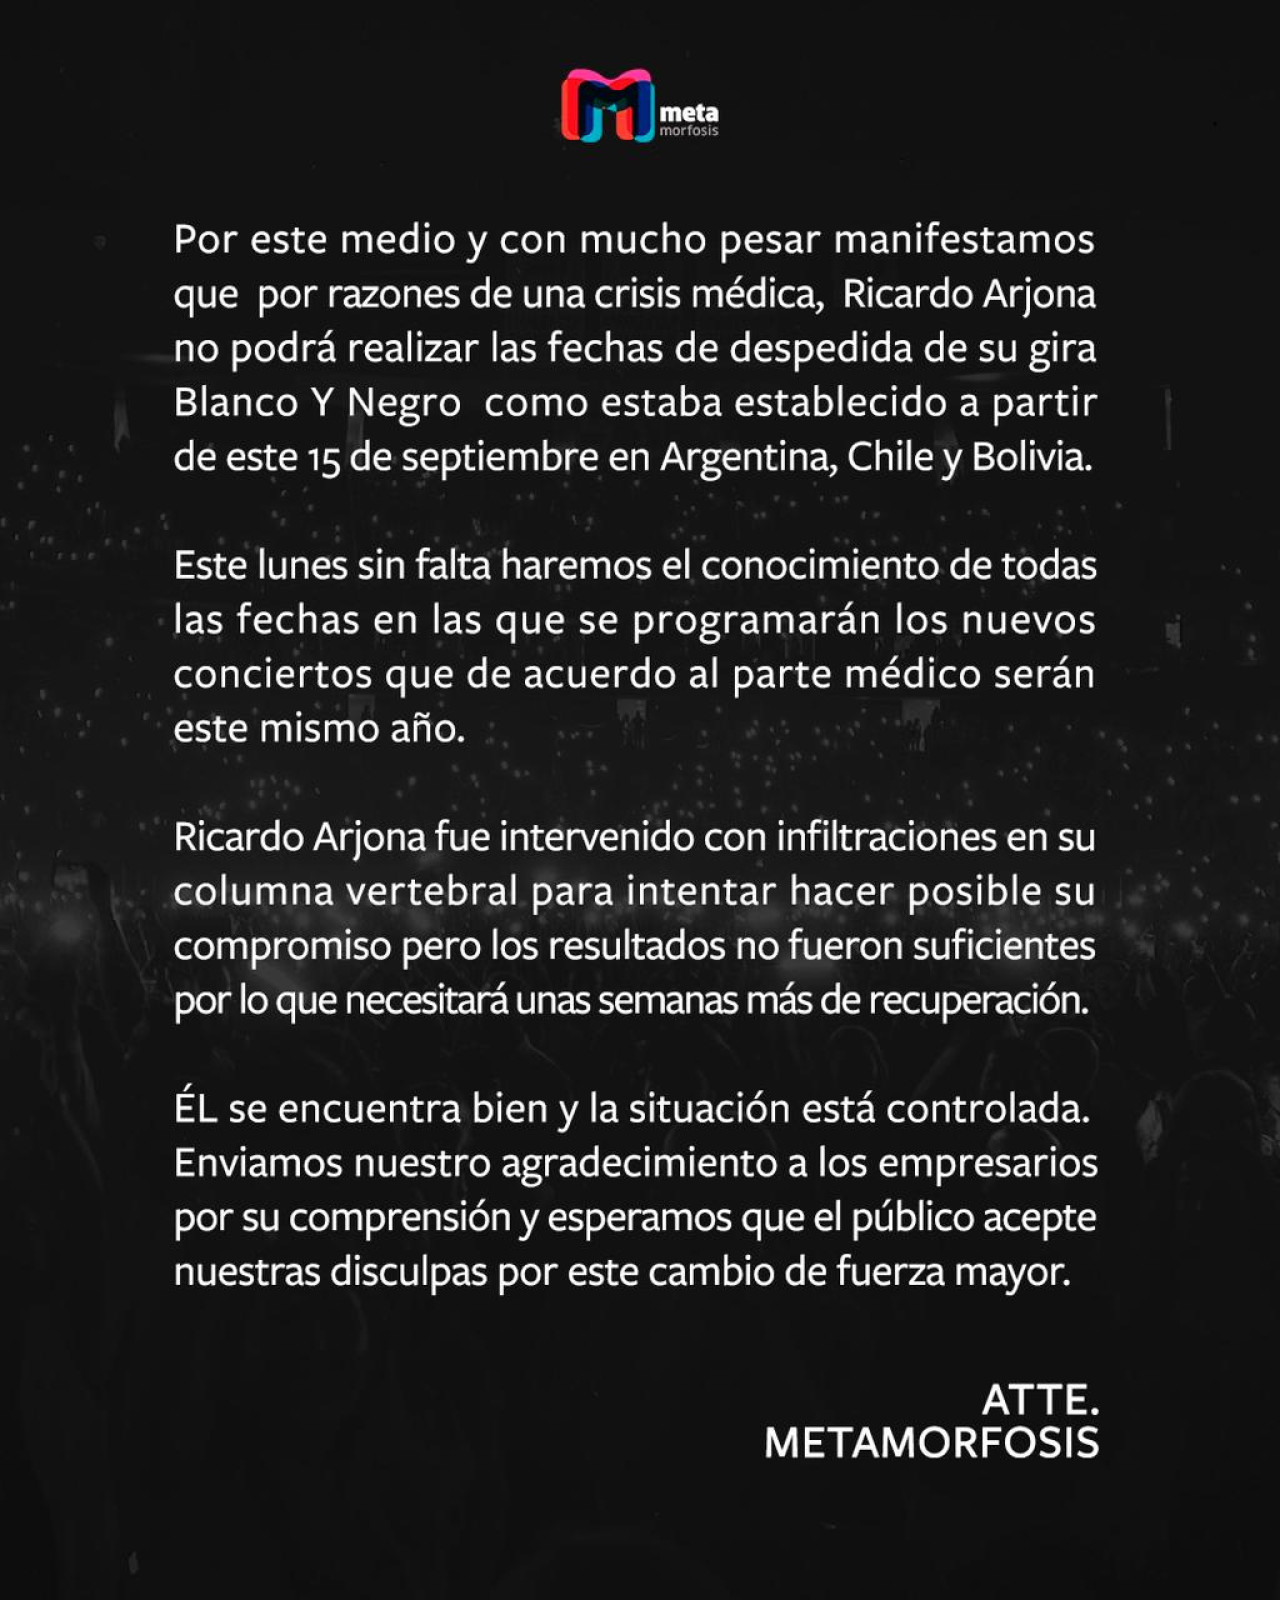 Comunicado de Ricardo Arjona sobre su cancelación de shows en Argentina.